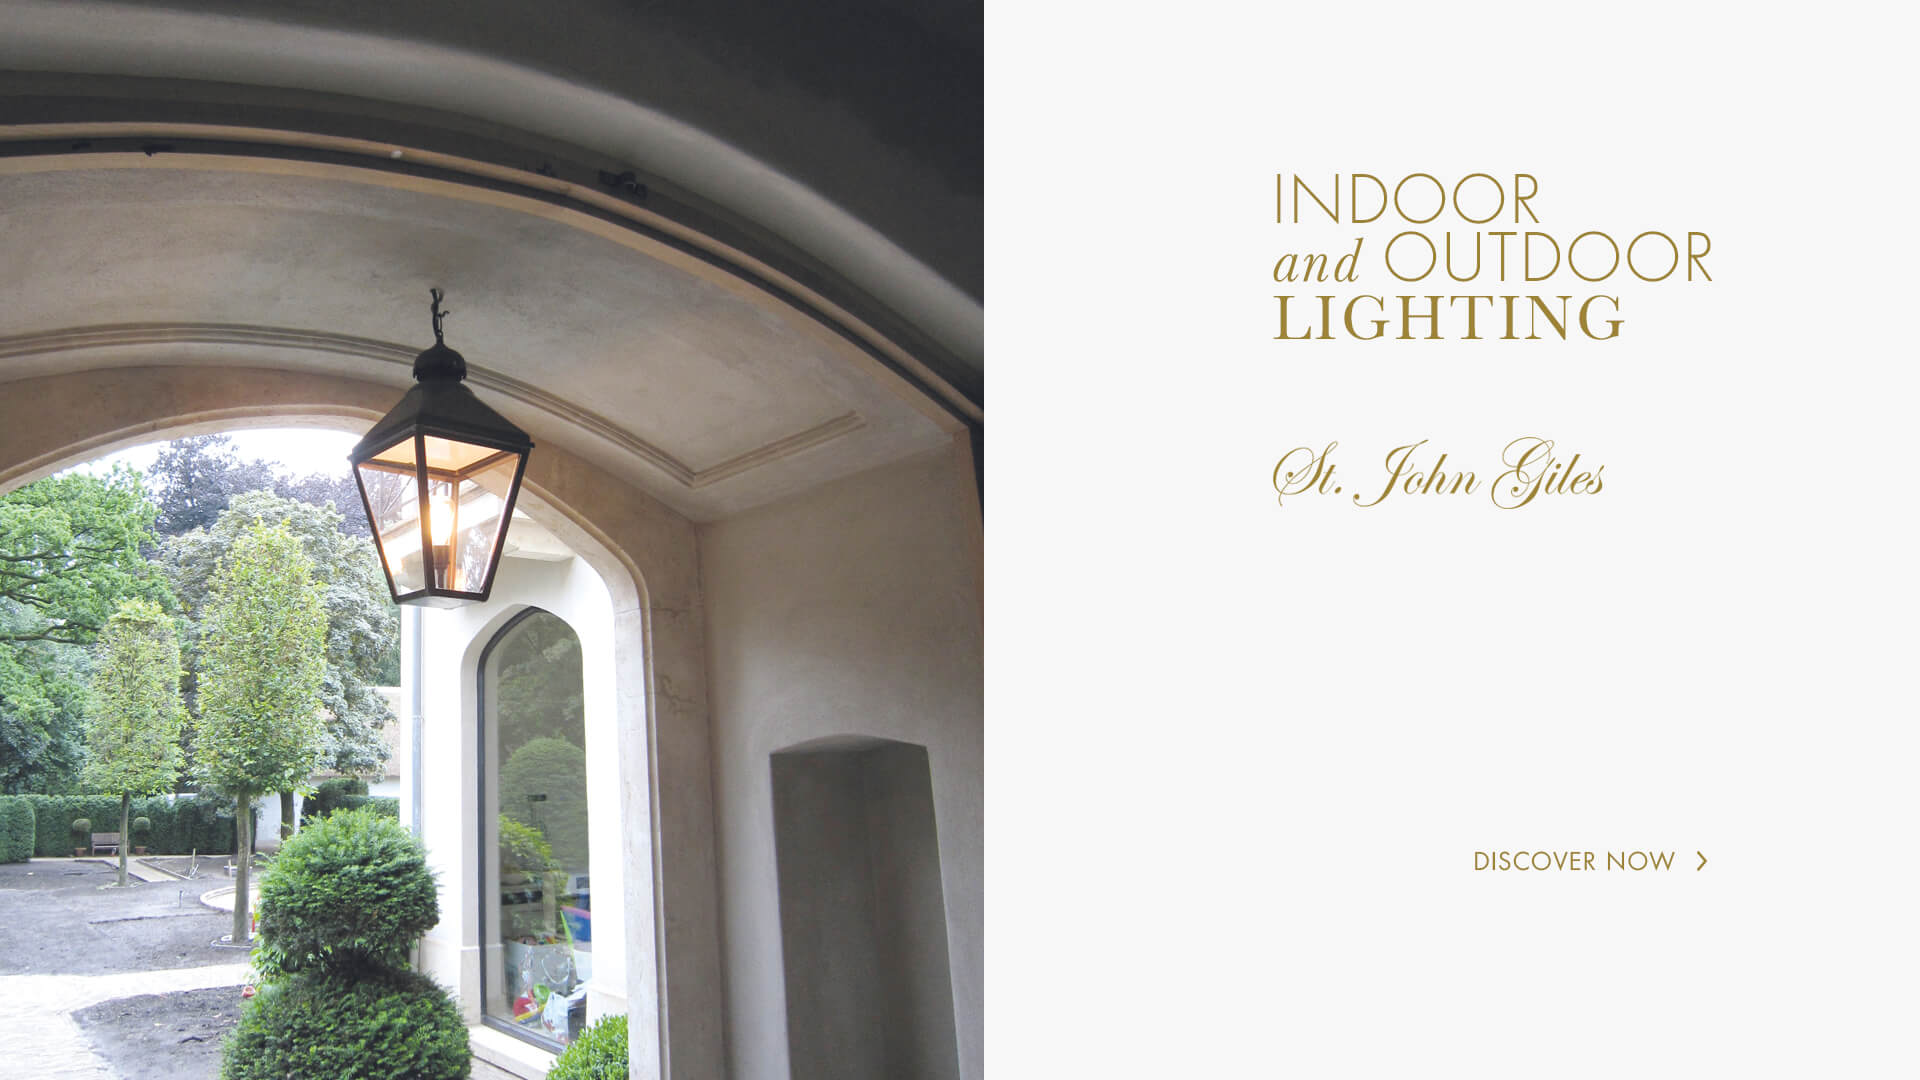 Lerou St. John Giles: Indoor and Outdoor Lighting. Lerou St. John Giles: binnen- en buitenverlichting.